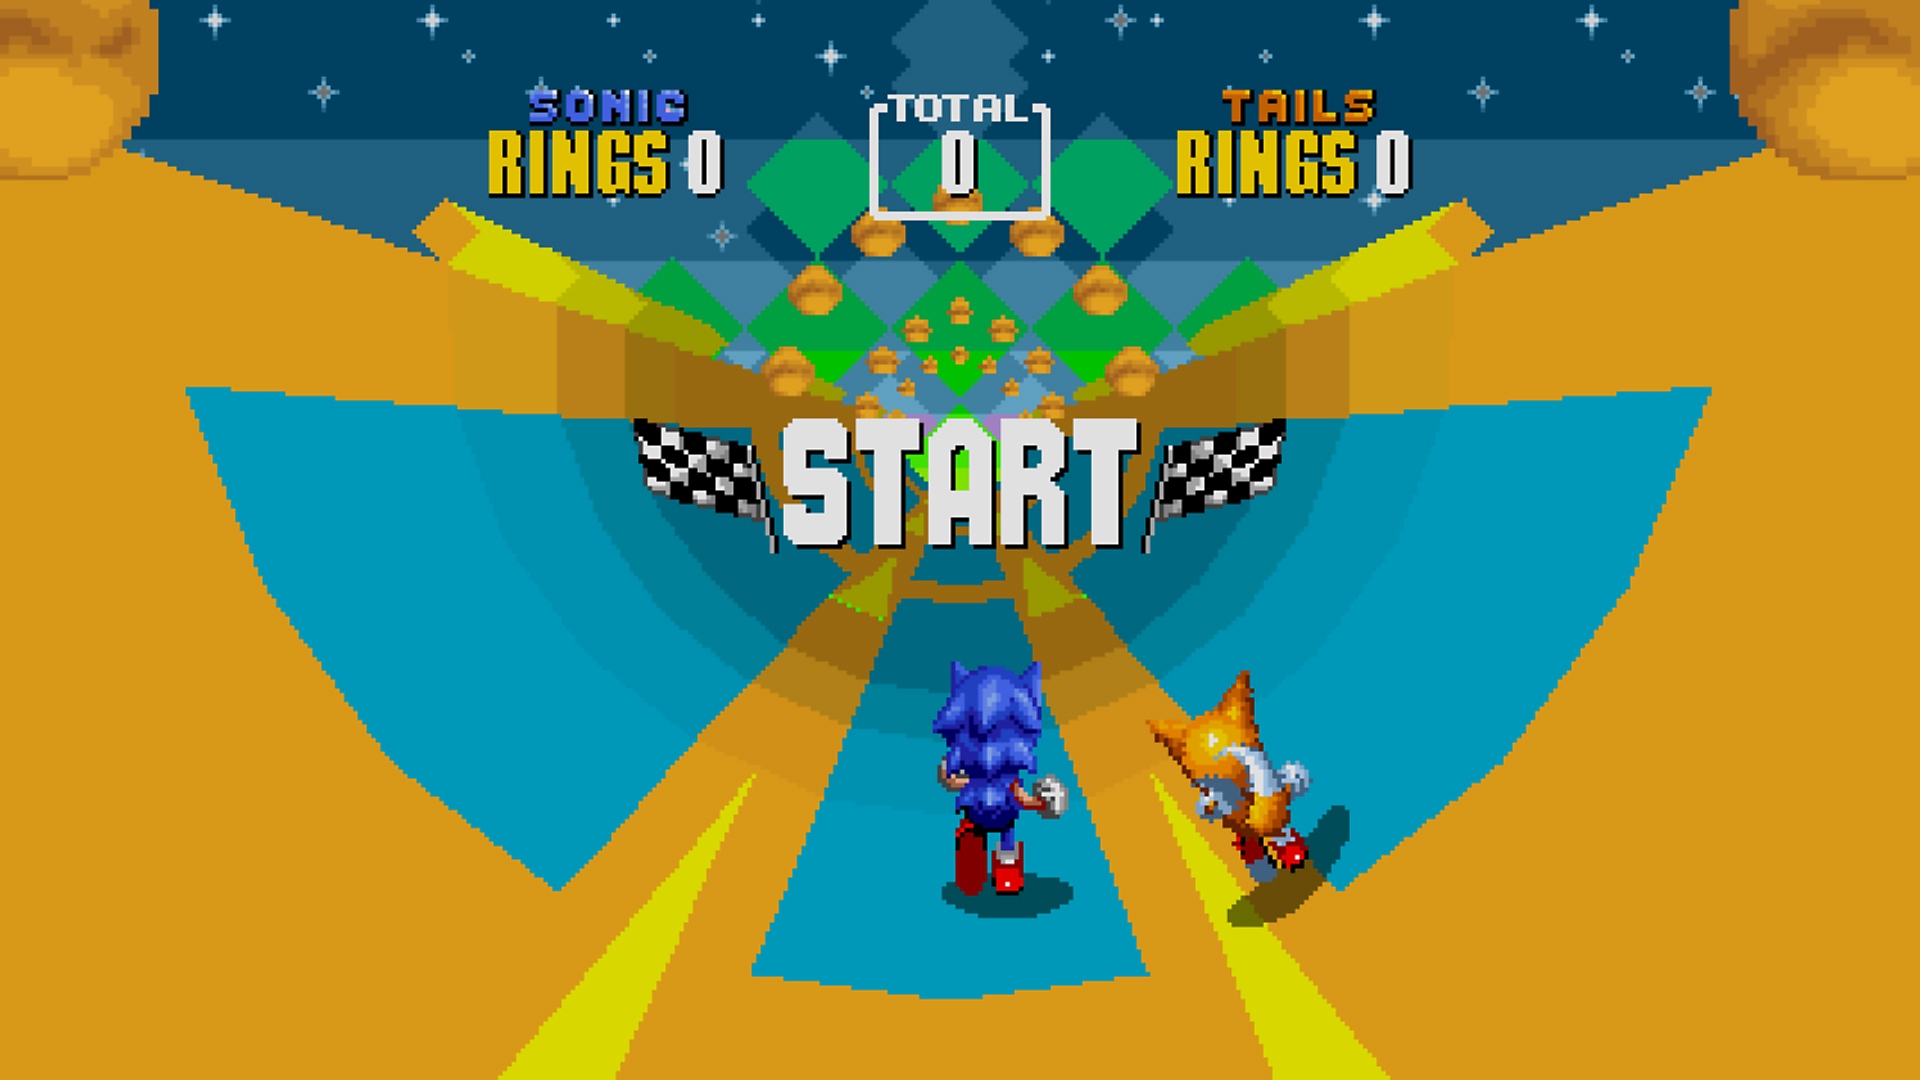 Captura de pantalla de Sonic que muestra a Sonic y Tails corriendo por un nivel